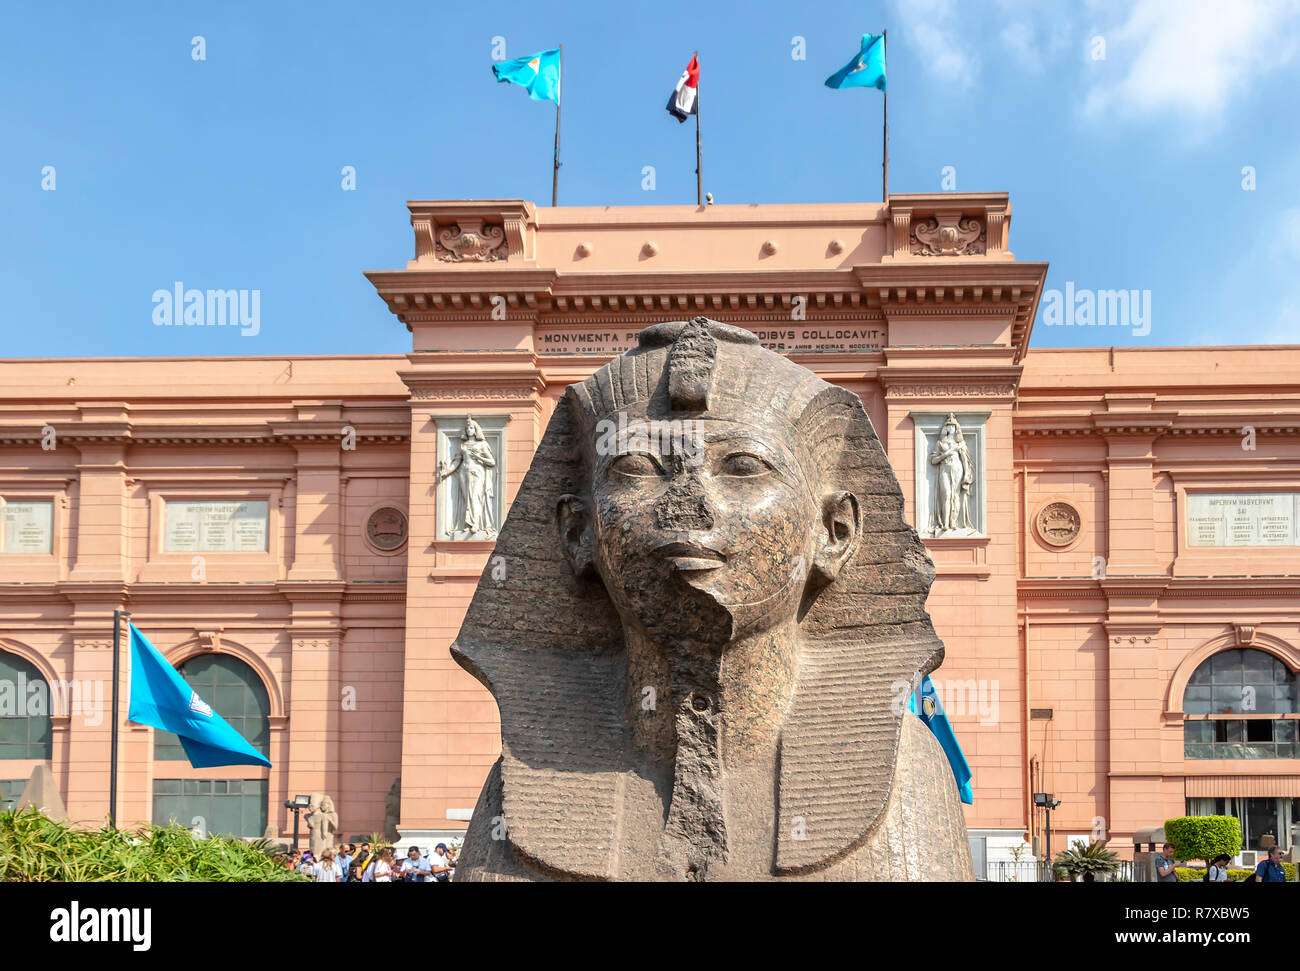 Cairo, Egypt - September 15, 2018: Egyptian Museum of Cairo in Egypt Stock Photo